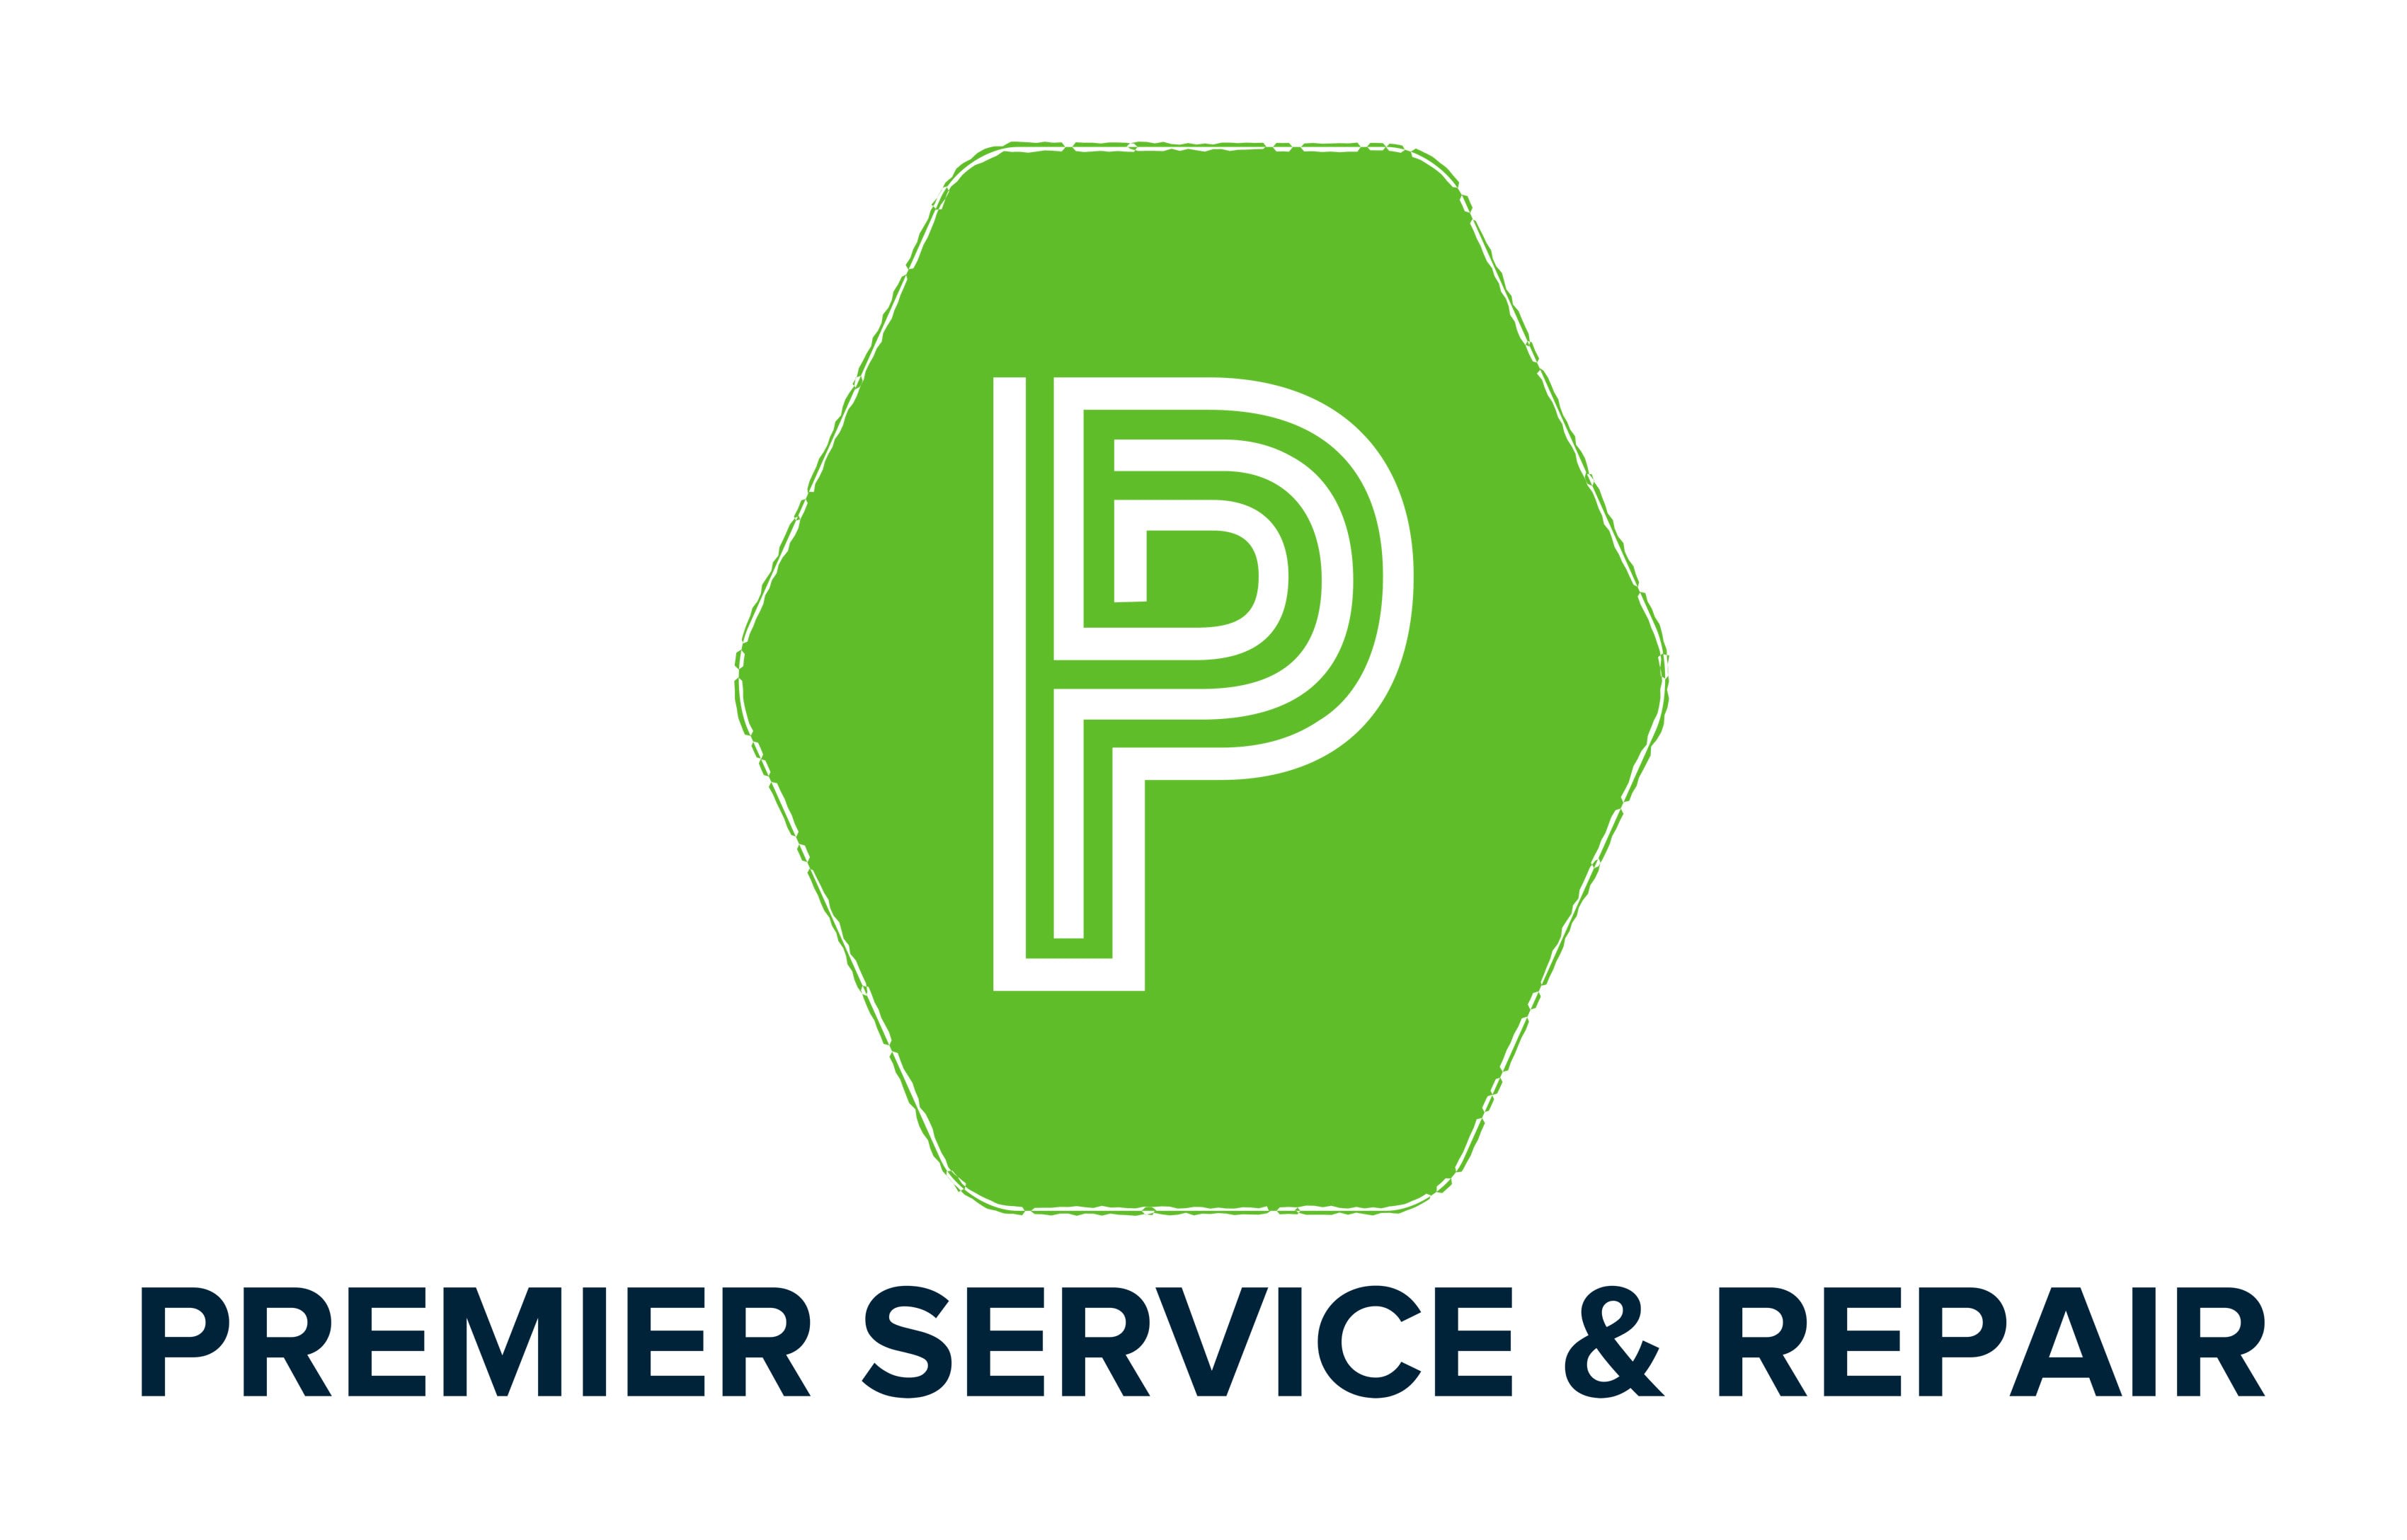 Premier Service & Repair